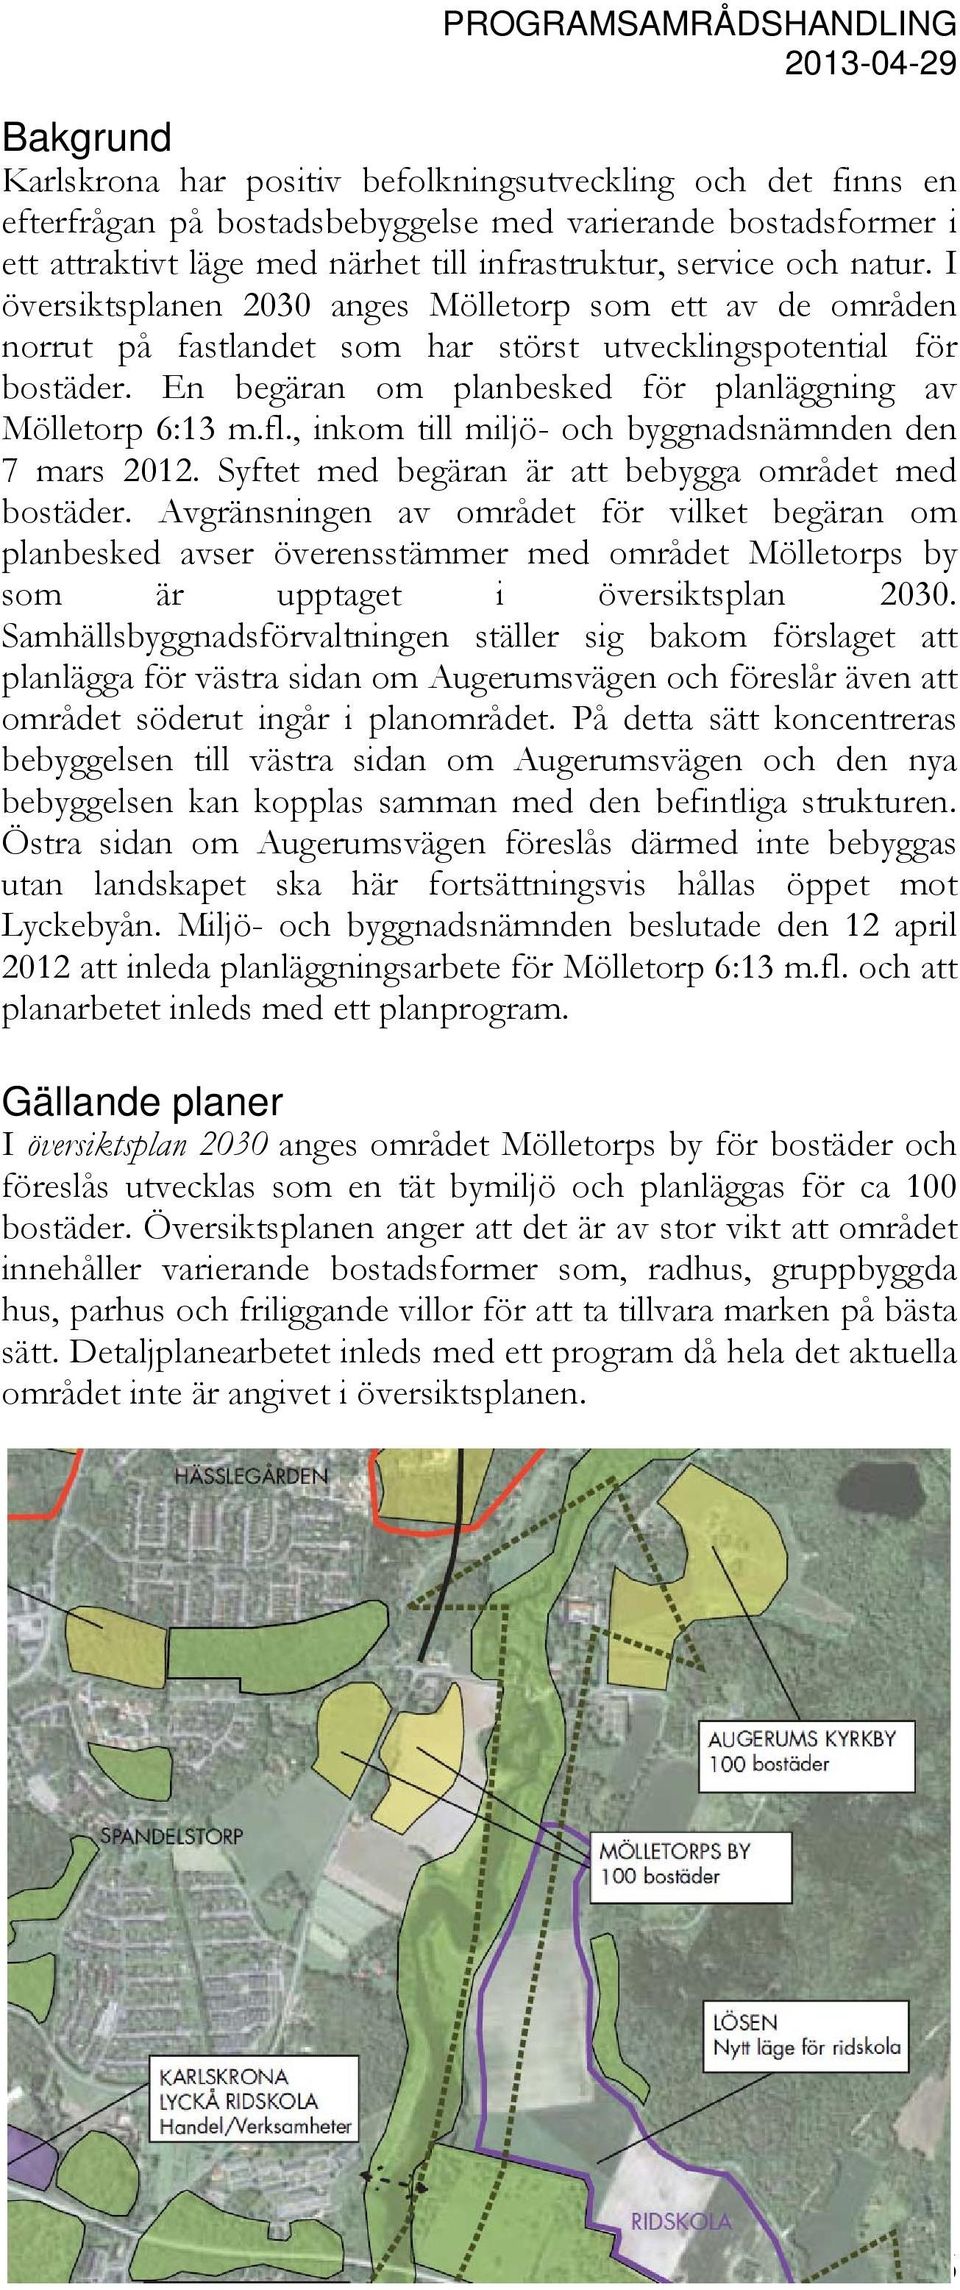 En begäran om planbesked för planläggning av Mölletorp 6:13 m.fl., inkom till miljö- och byggnadsnämnden den 7 mars 2012. Syftet med begäran är att bebygga området med bostäder.